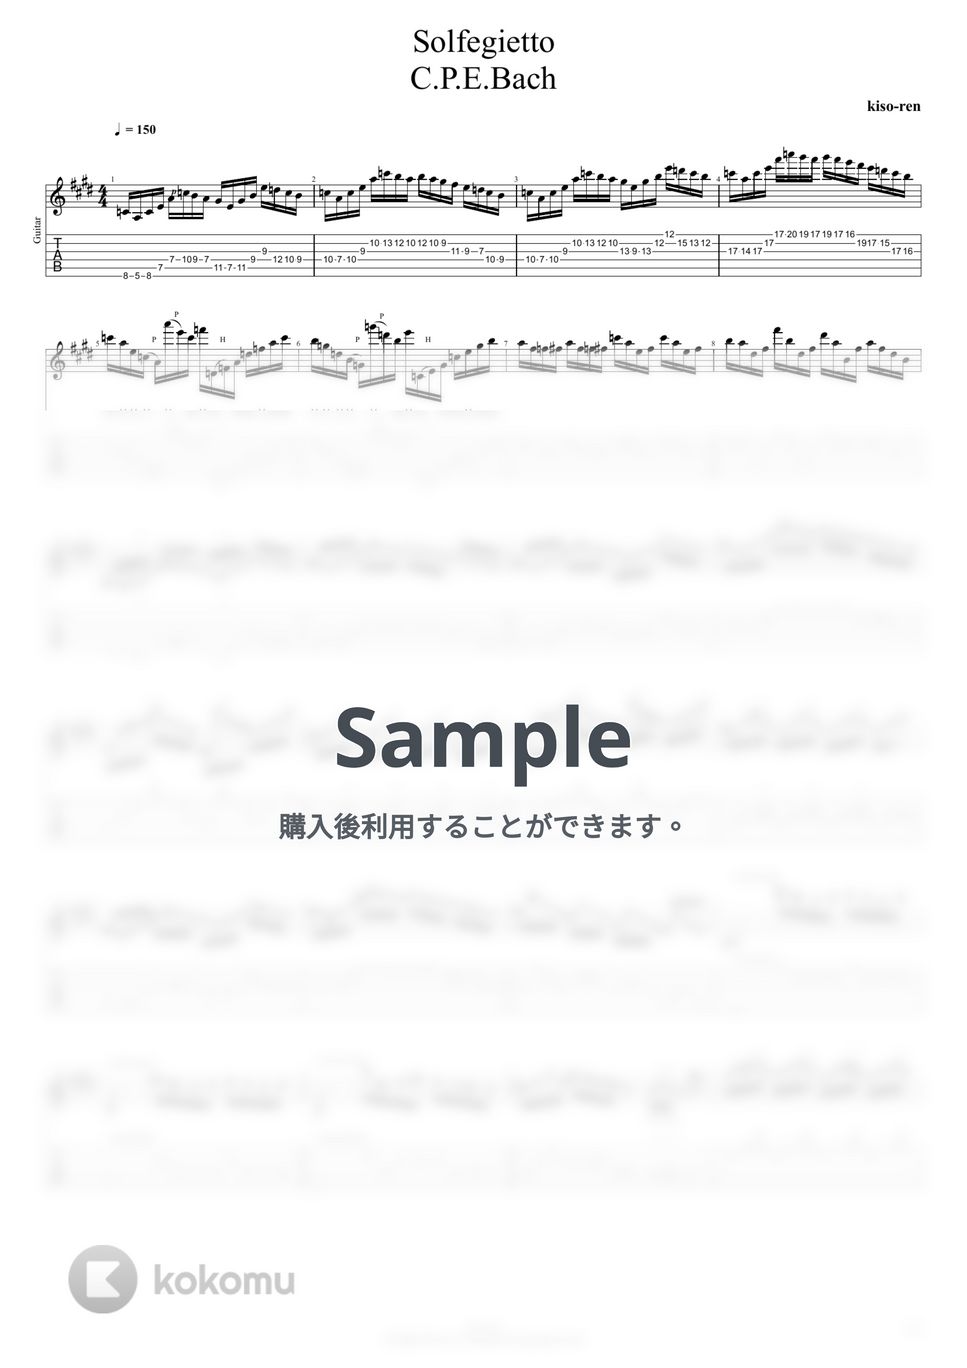 C.P.E.Bach バッハ - Solfeggietto C.P.E.Bach (TAB PDF & Guitar Pro files.（gp5）) by Technical Guitar